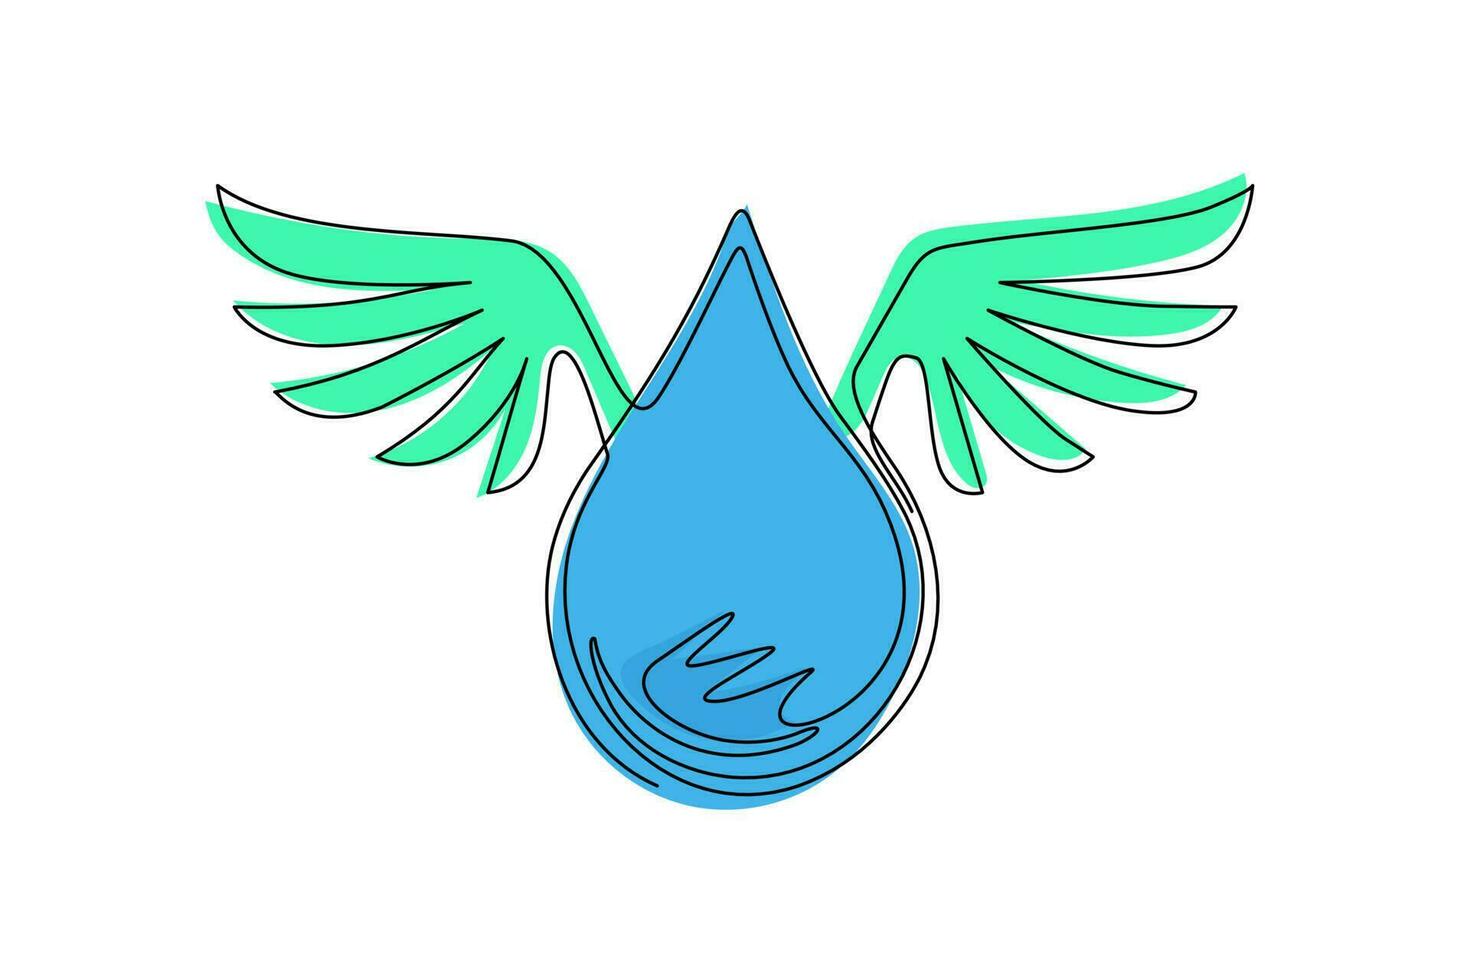 dibujo de una sola línea continua personaje de caricatura de gota de agua con alas concepto de banner del día mundial del agua. gota de agua alada icono plano aislado. Ilustración de vector de diseño gráfico de dibujo de una línea dinámica